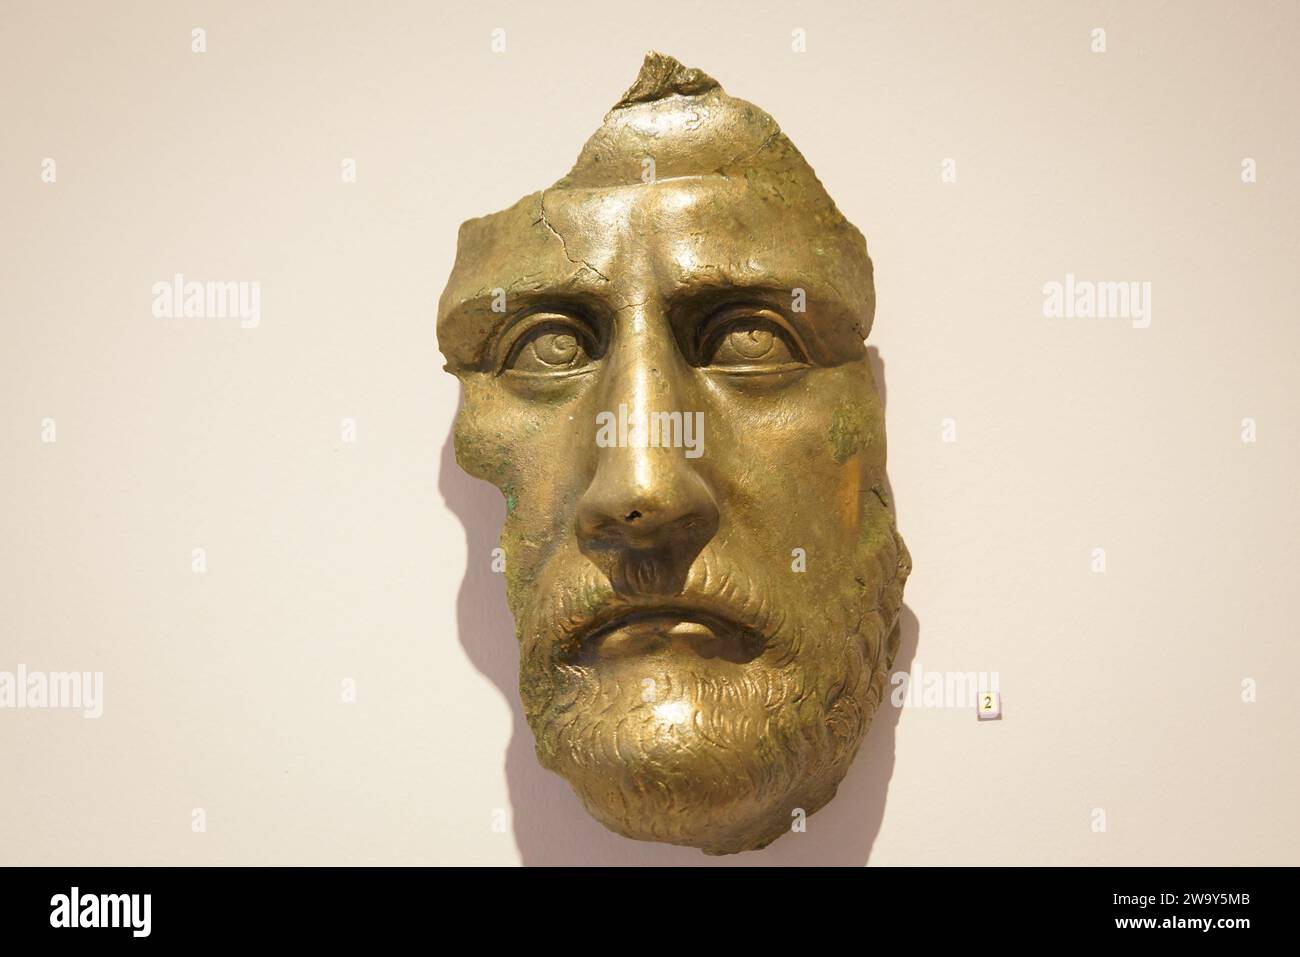 Estatua de bronce en el Museo de Civilizaciones Anatolianas, ciudad de Ankara, Turquía Foto de stock